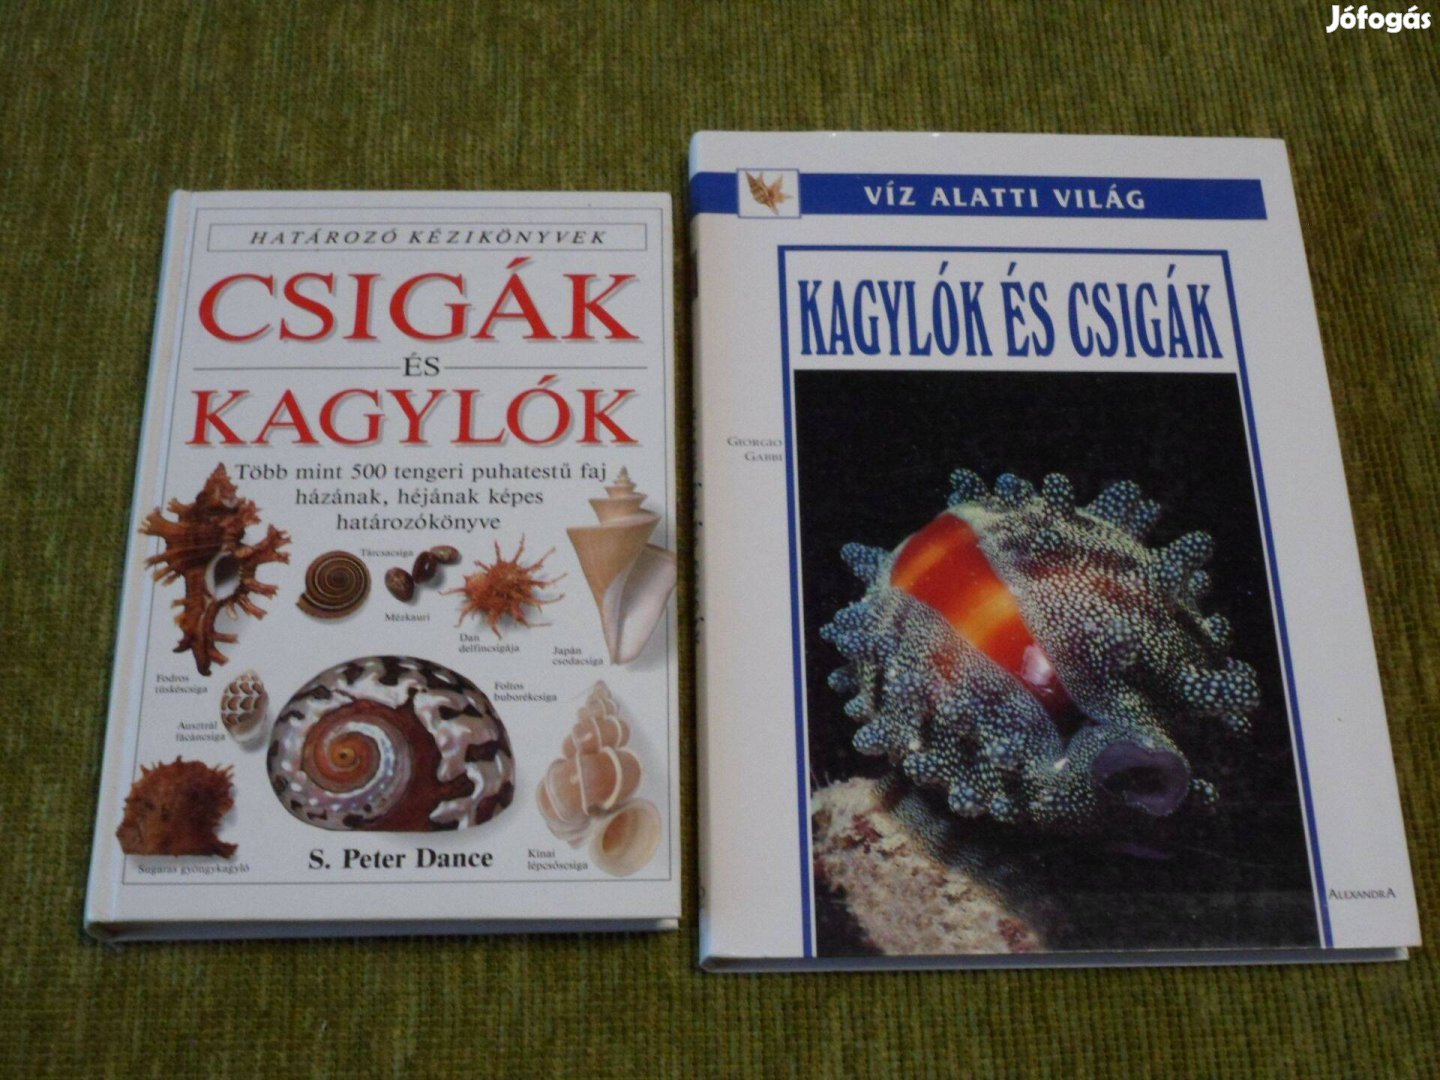 Határozó kézikönyvek: Csigák és kagylók + Kagylók és csigák